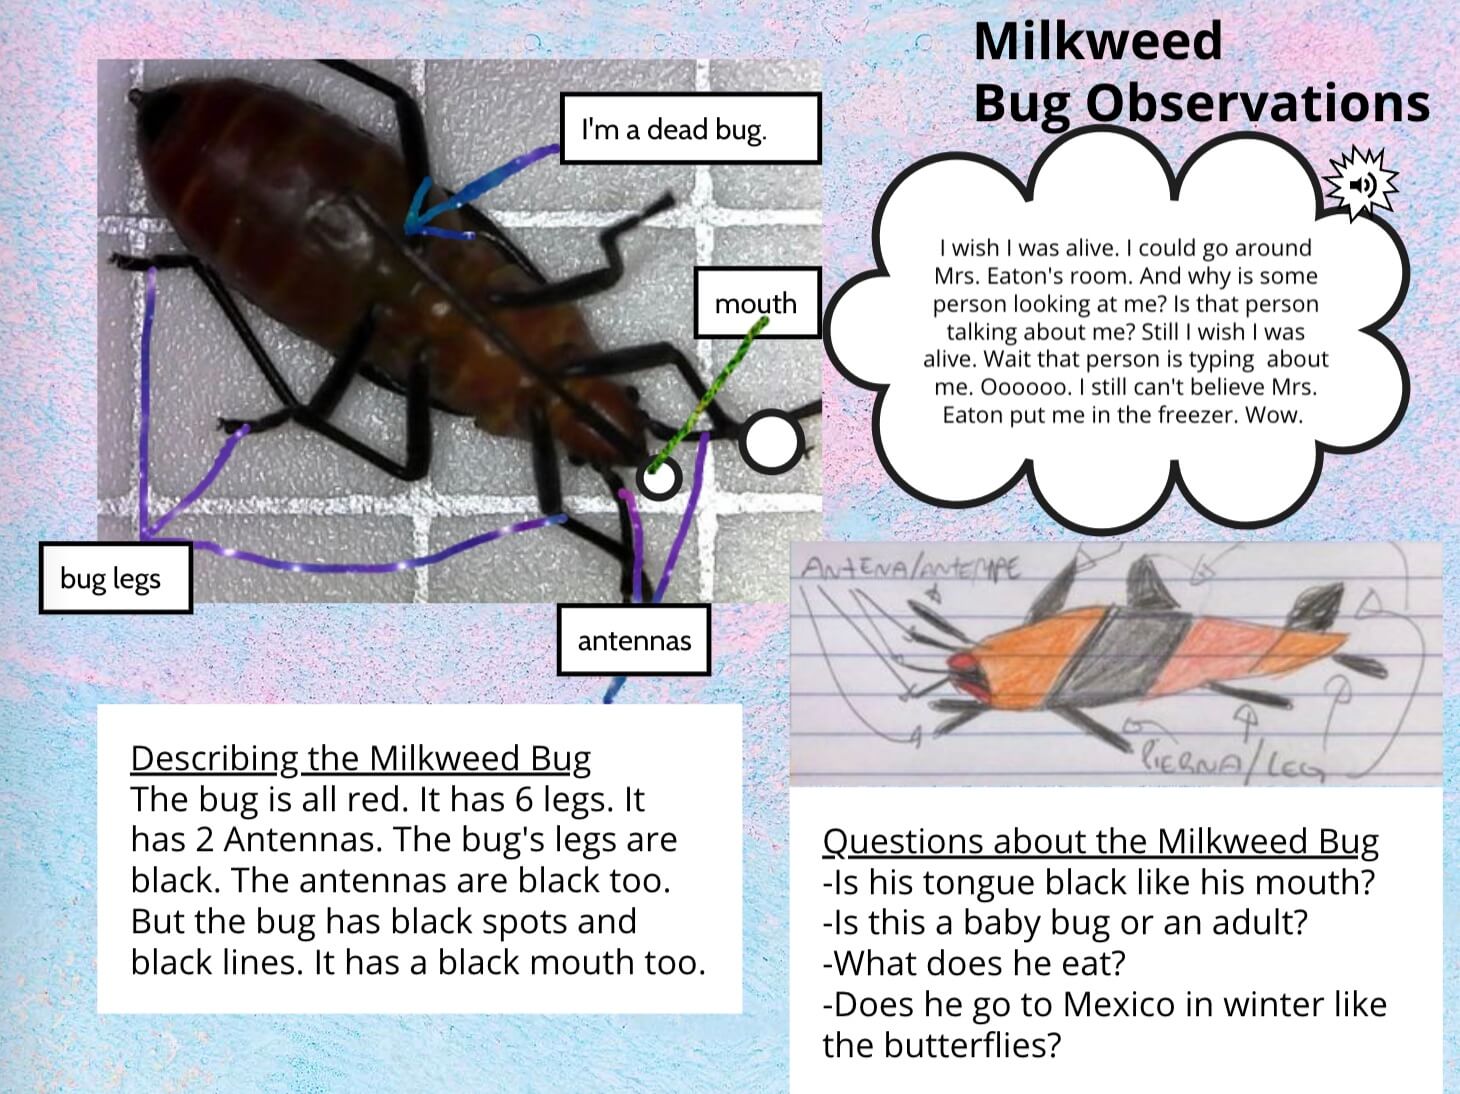 Milkweed bug observations